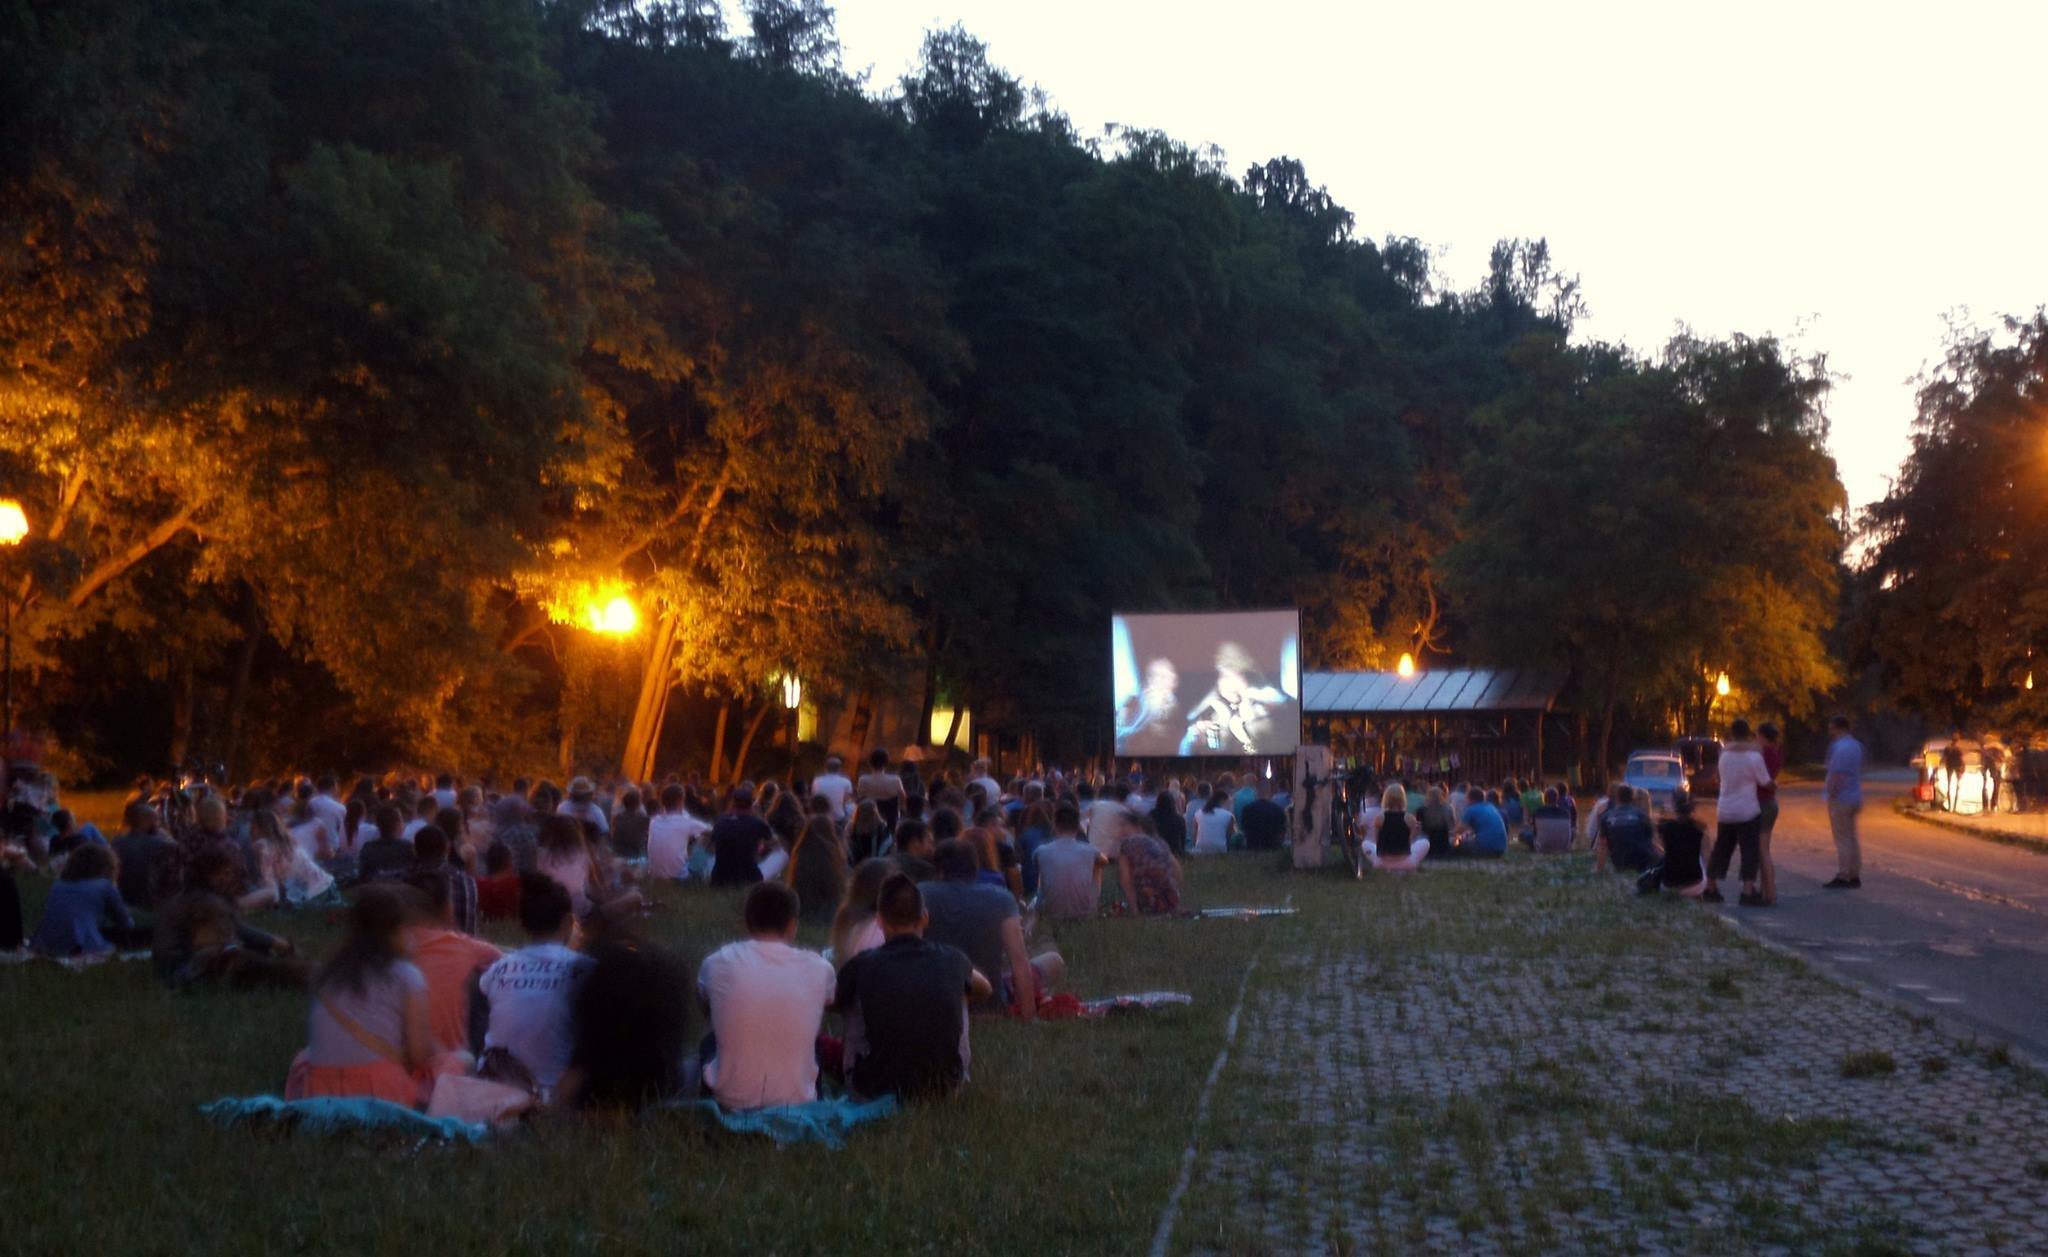 Letné kino v Líščom údolí, Karlova Ves, Bratislava | Odkazprestarostu.sk